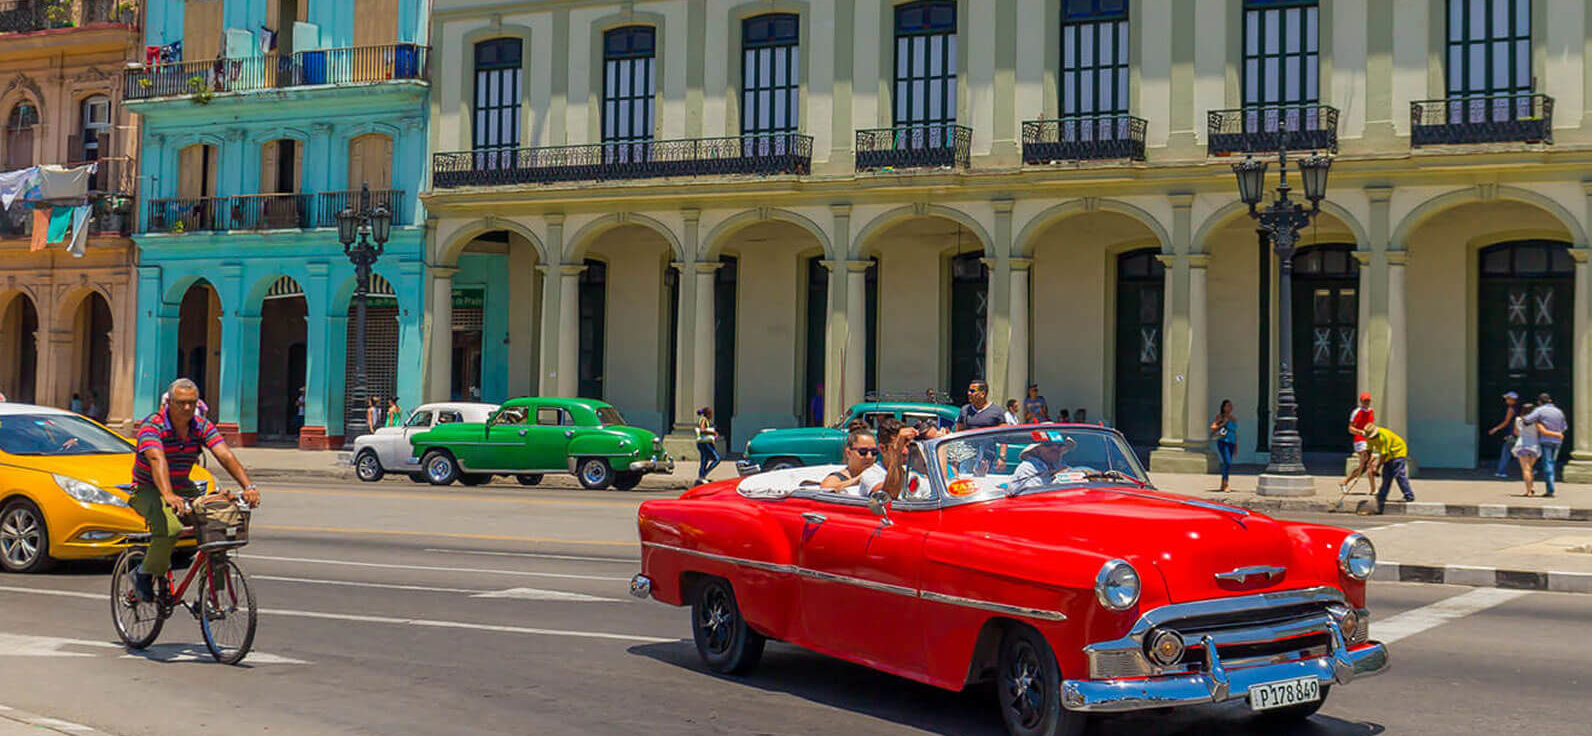 Las curiosidades de La Habana